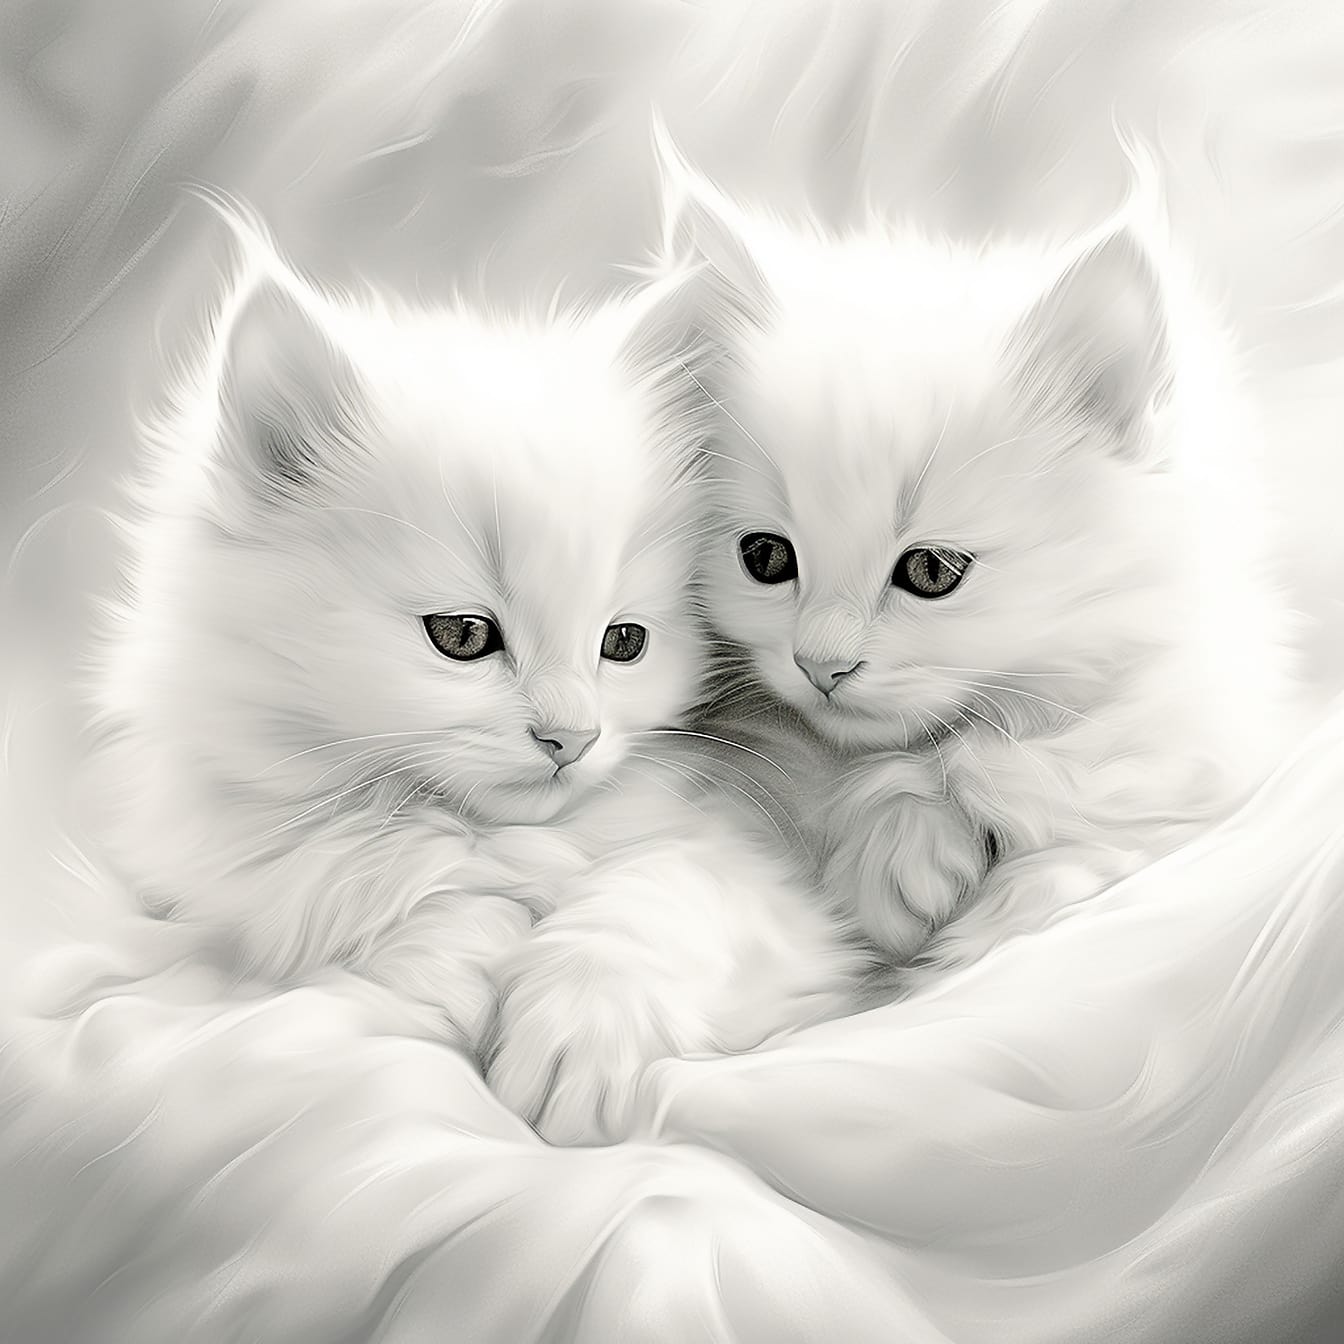 Hình minh họa đơn sắc cận cảnh mèo con lông trắng